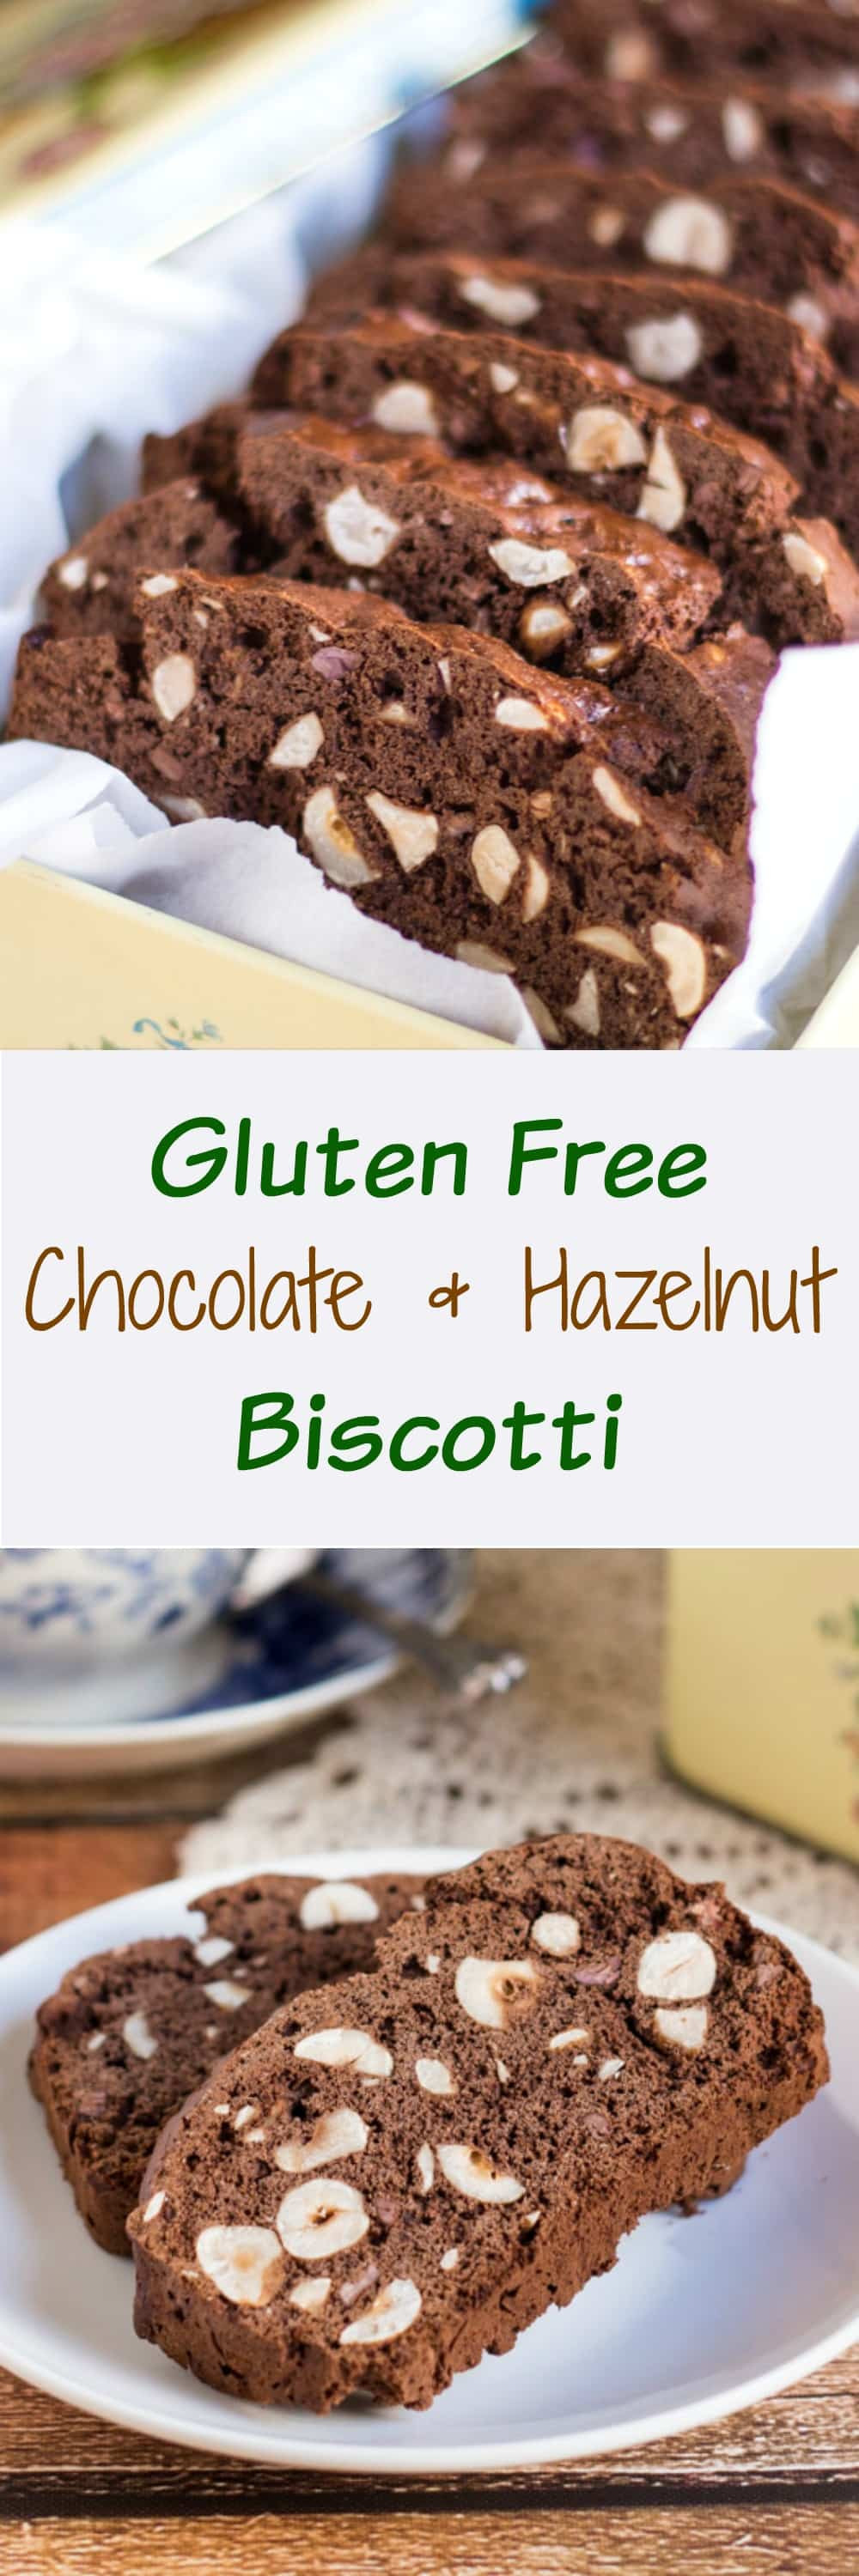 Gluten Free Biscotti
 Easy Gluten Free Chocolate and Hazelnut Biscotti